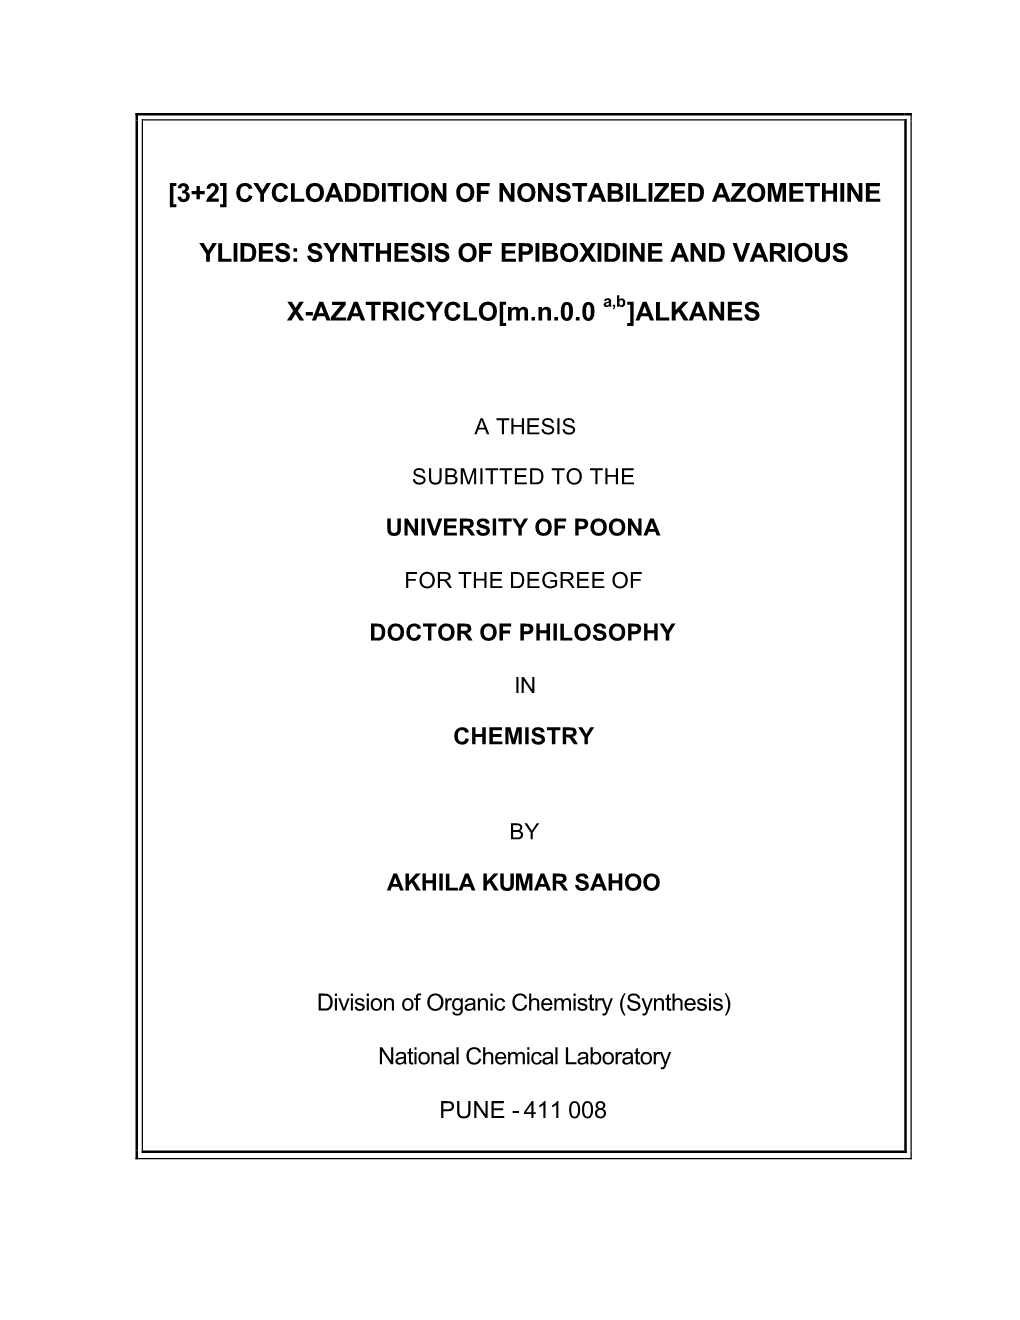 Synthesis of Epiboxidine and Various X-Azatricyclo